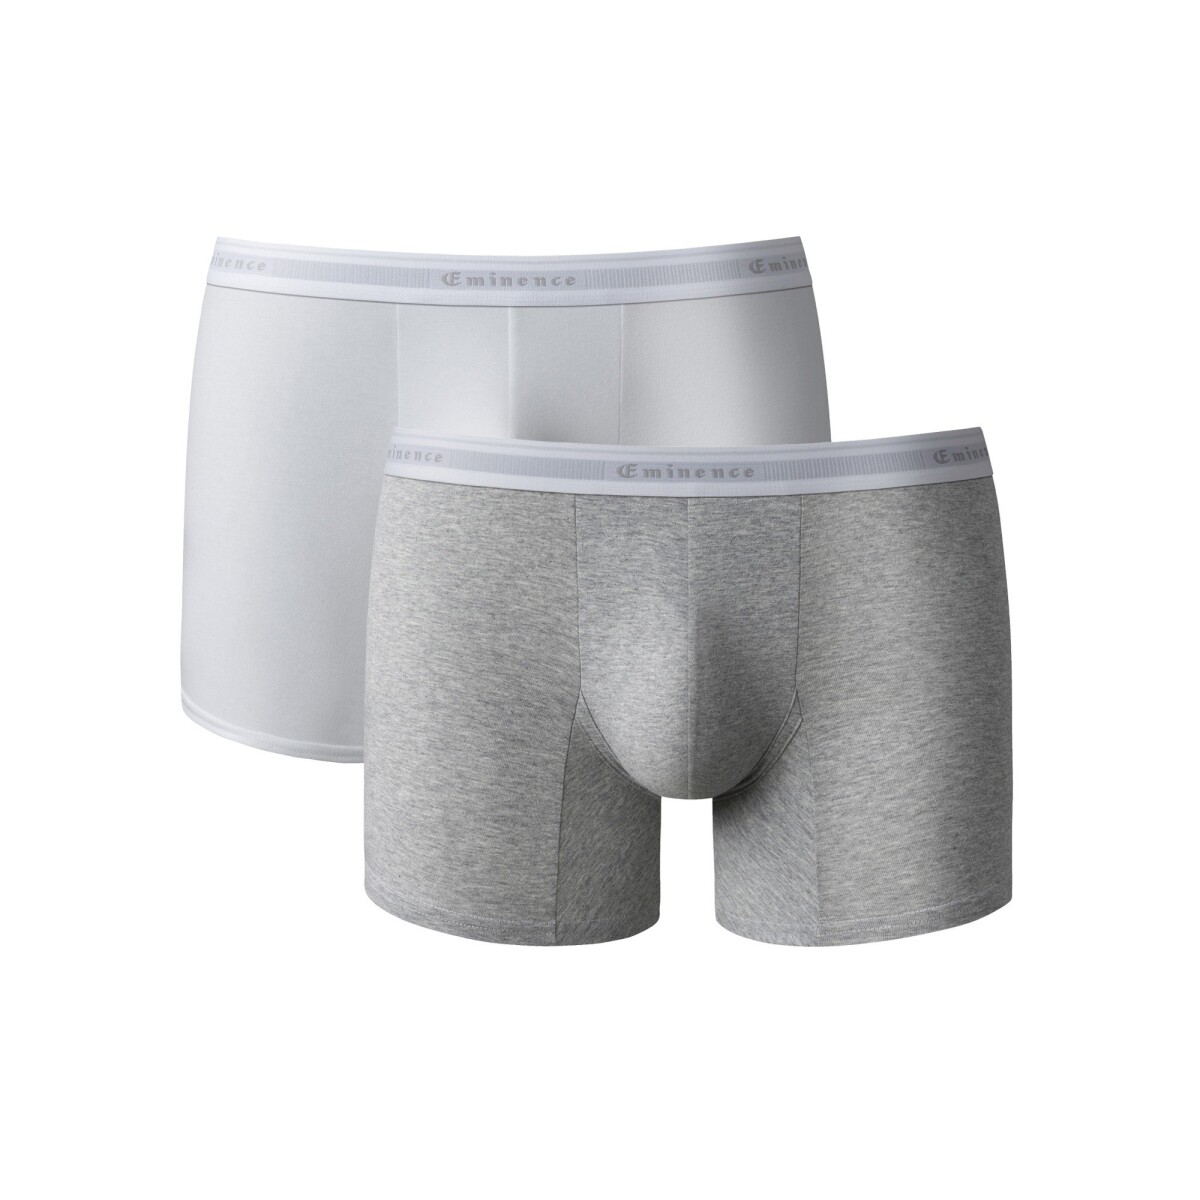 Súprava 2 jednofarebných boxeriek confort premium sivý melír bílá 93 100 (L)